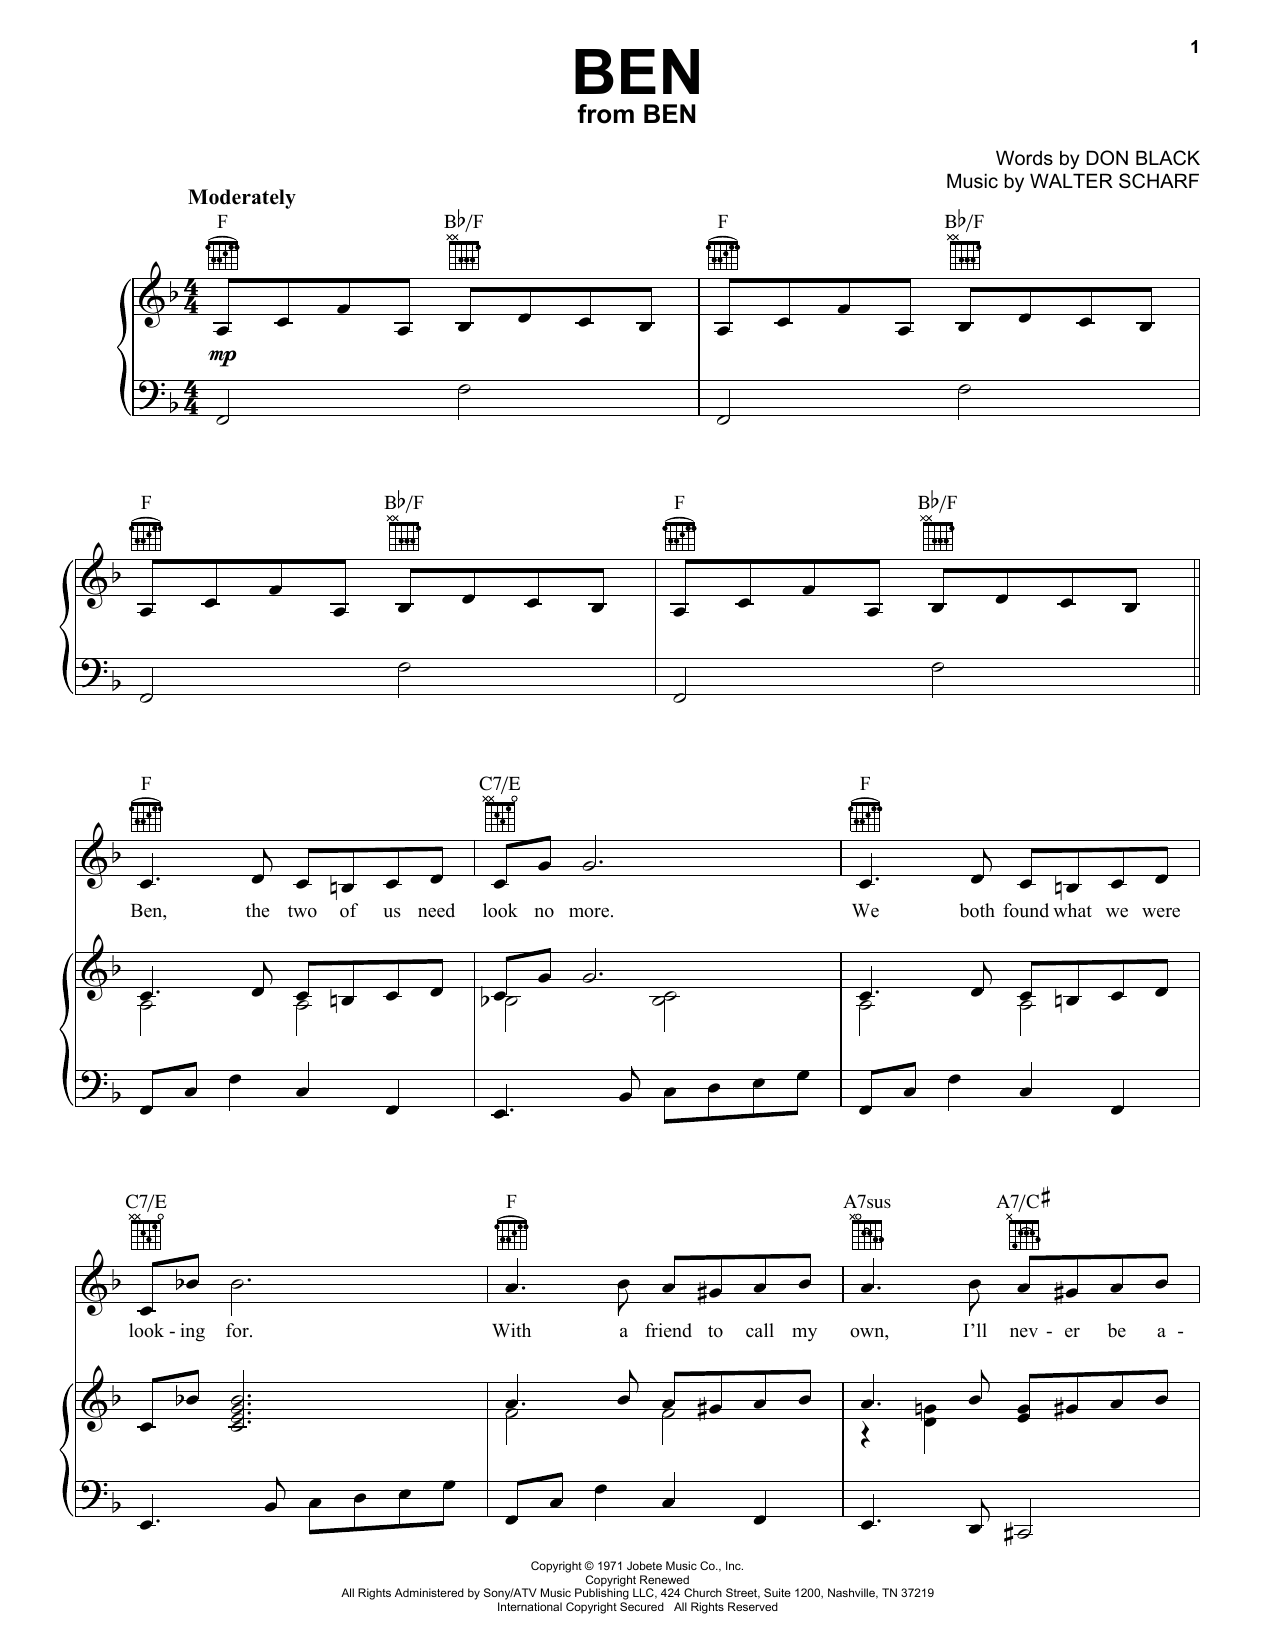 Michael Jackson Ben Sheet Music Notes & Chords for Keyboard - Download or Print PDF